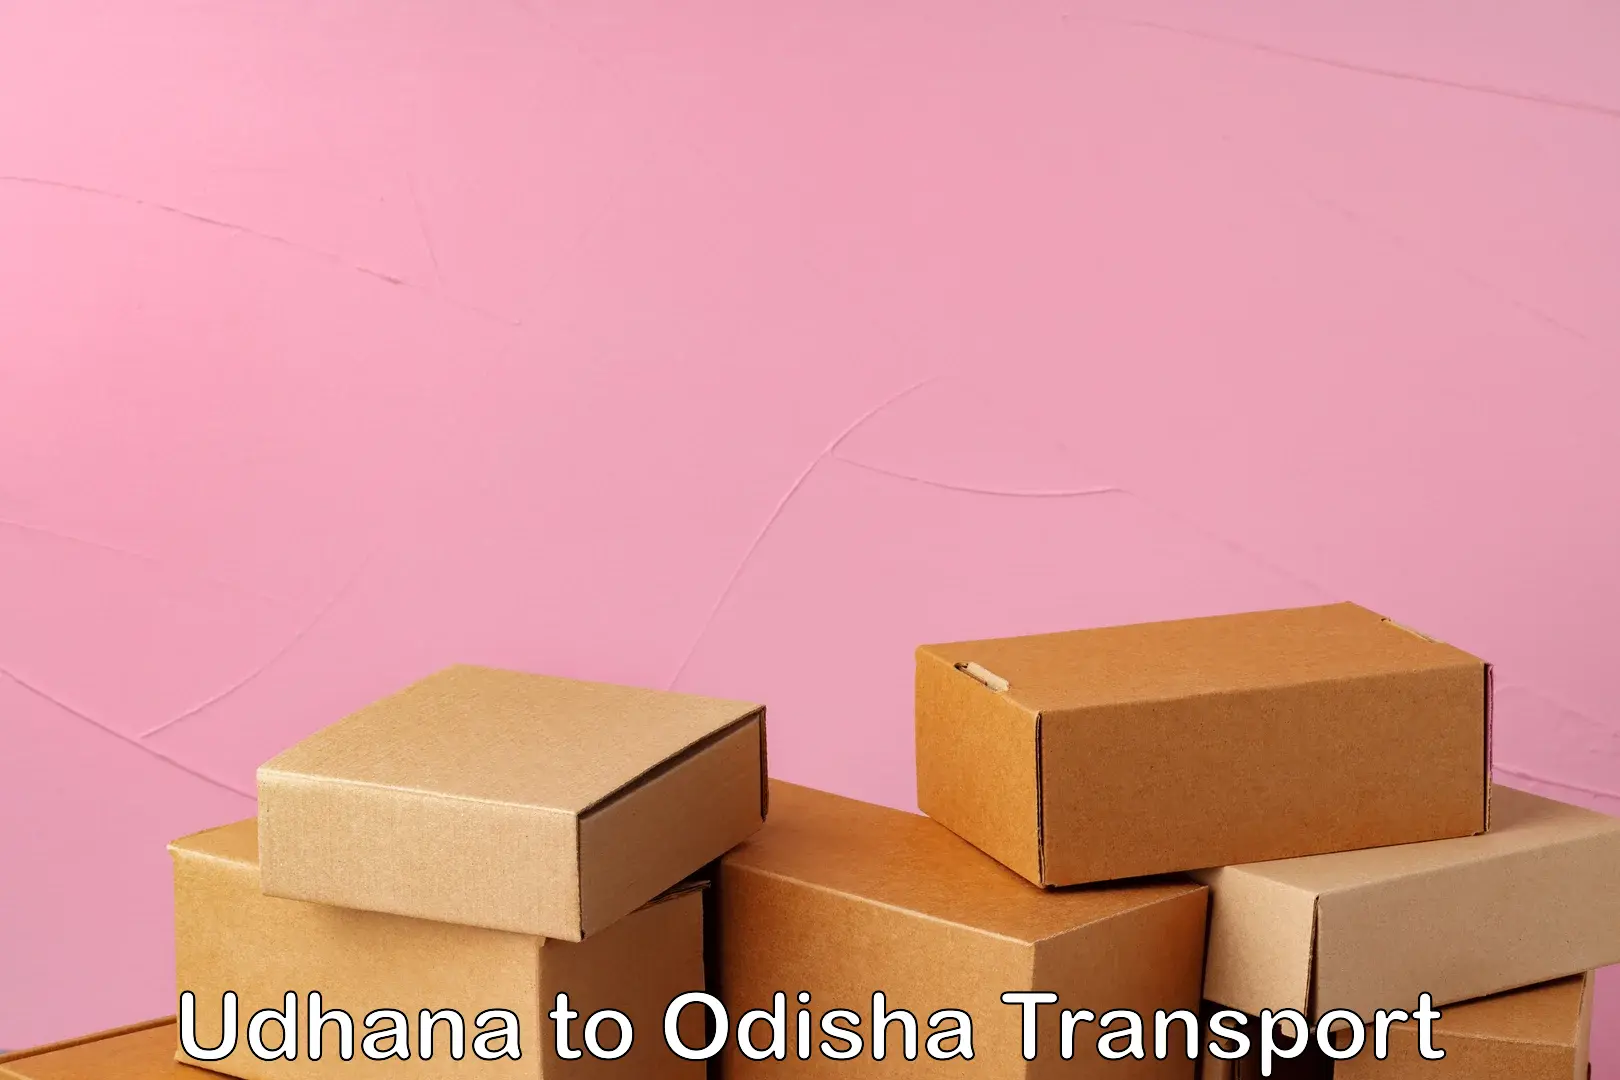 Bike transport service Udhana to Odisha